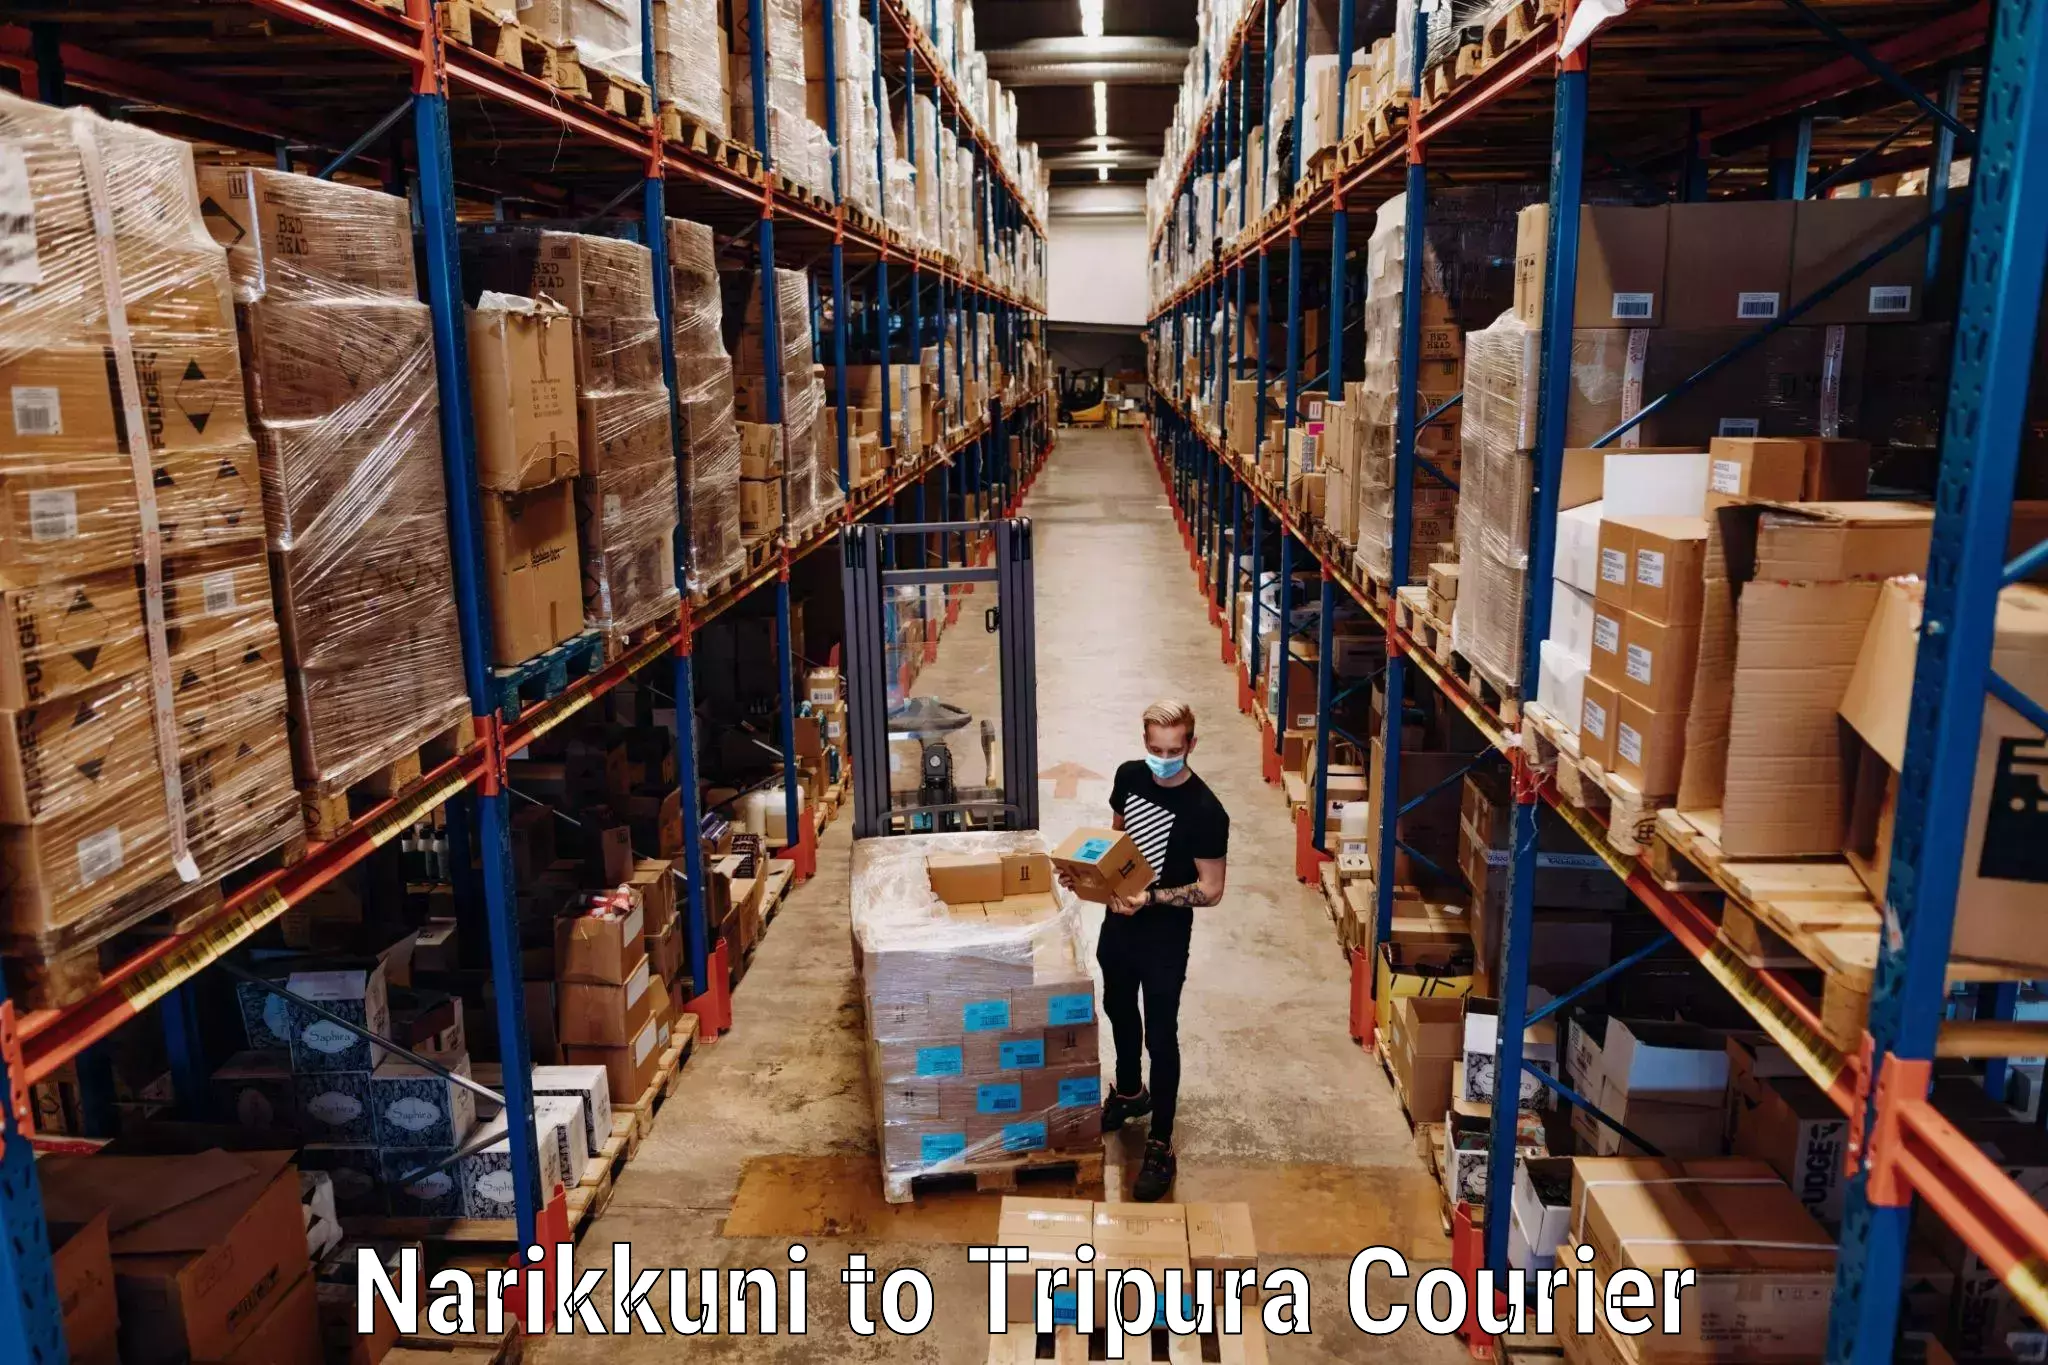 Nationwide luggage courier Narikkuni to Udaipur Tripura